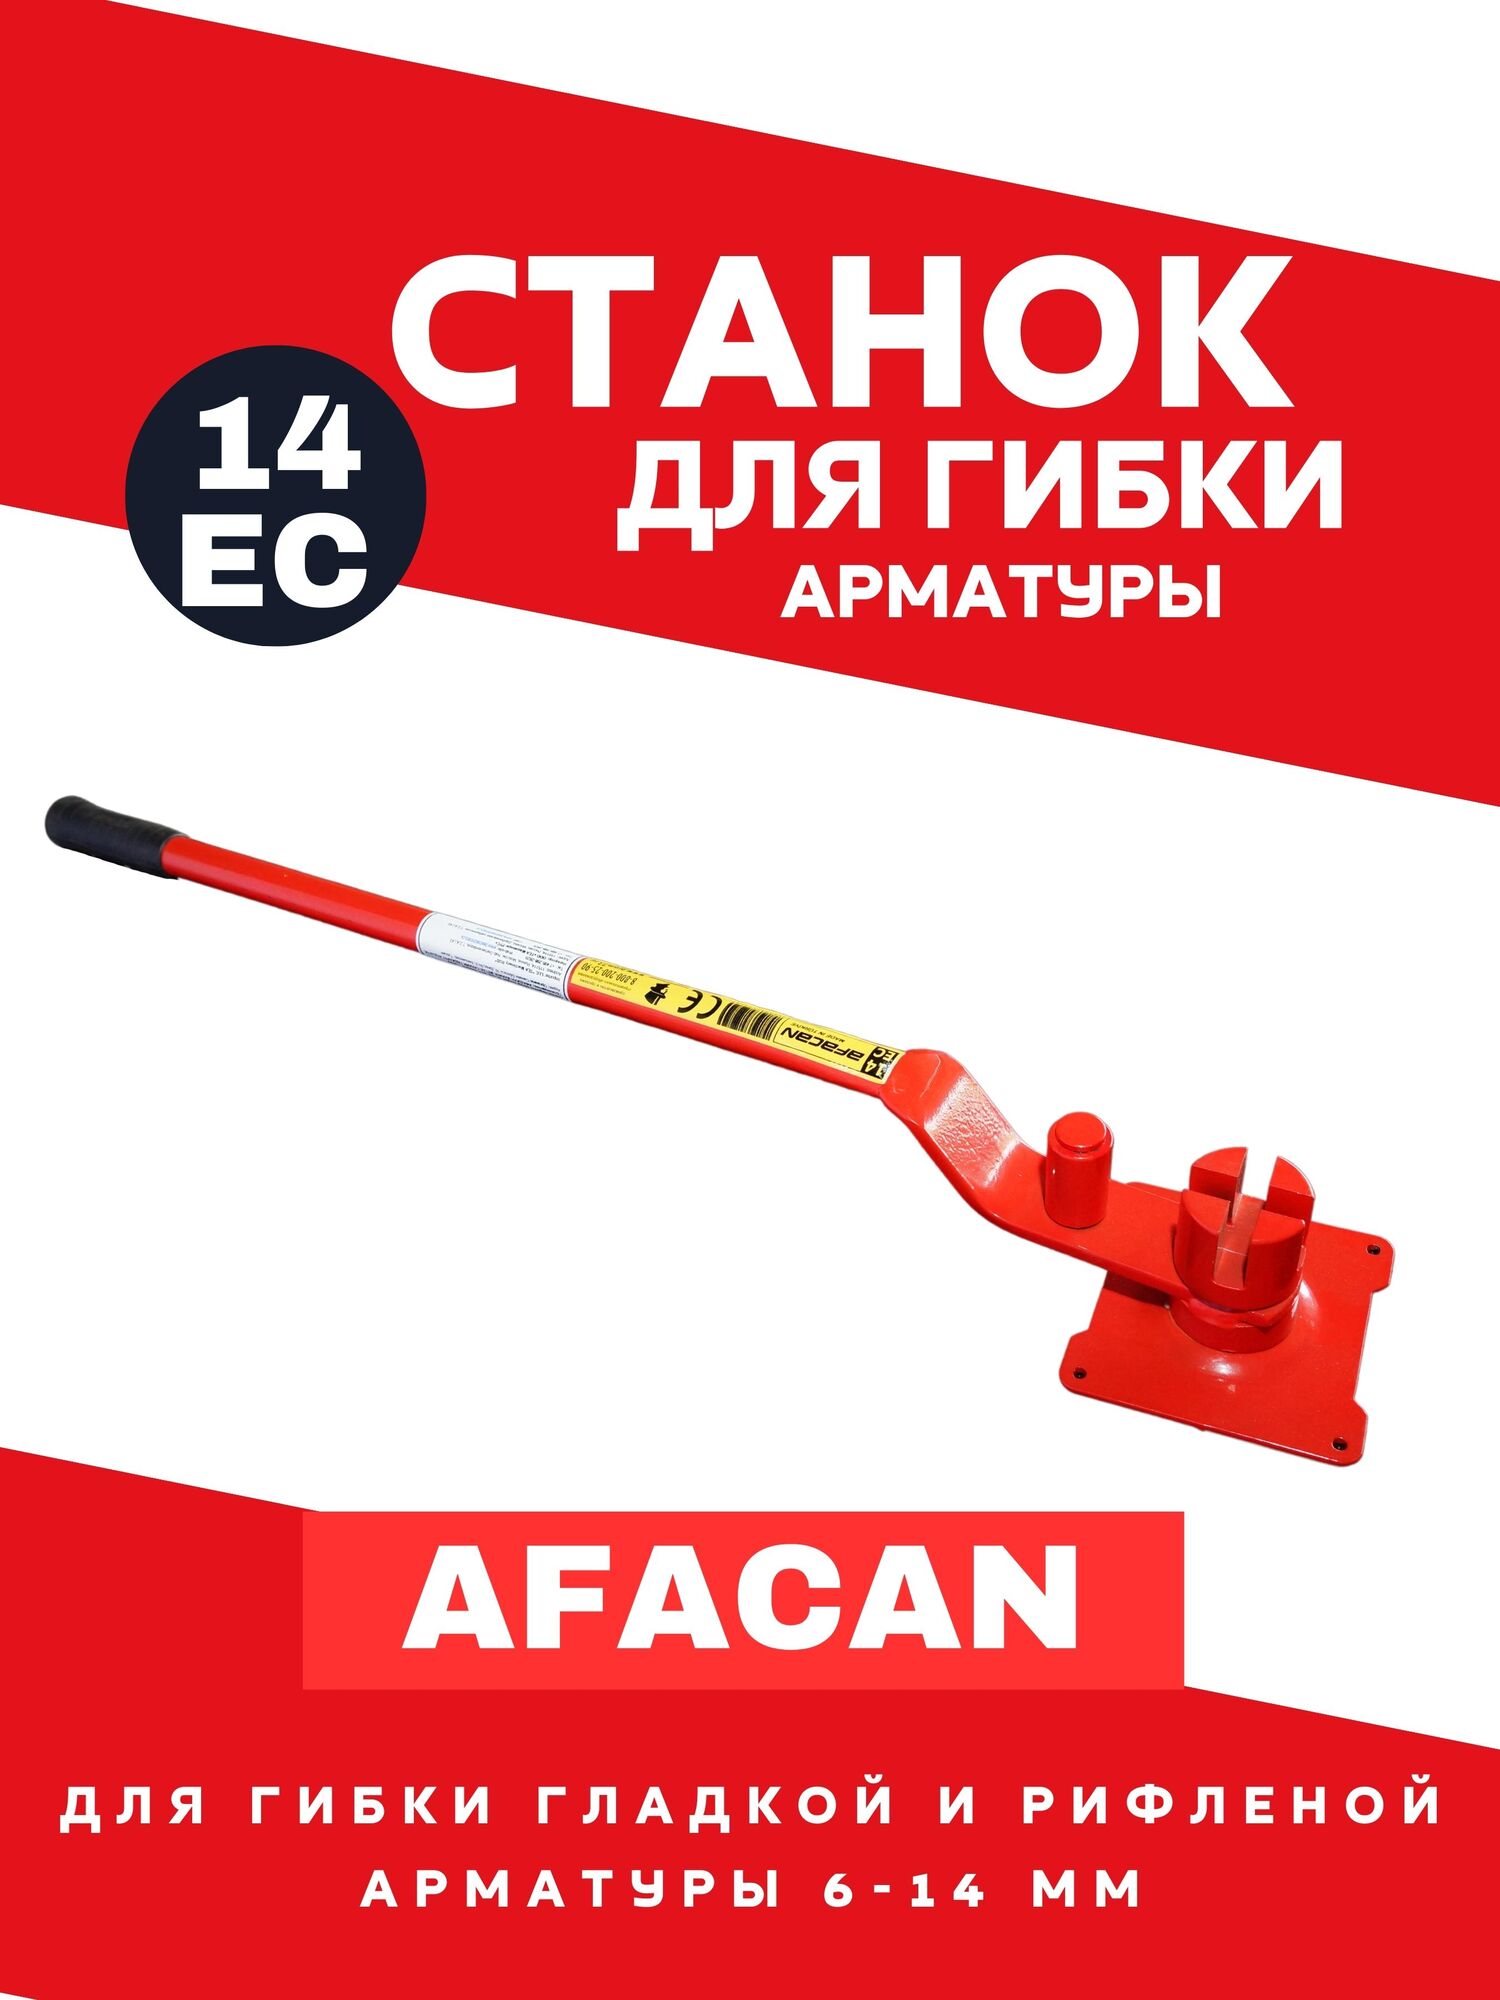 Станок для гибки арматуры ручной AFACAN 14ЕС